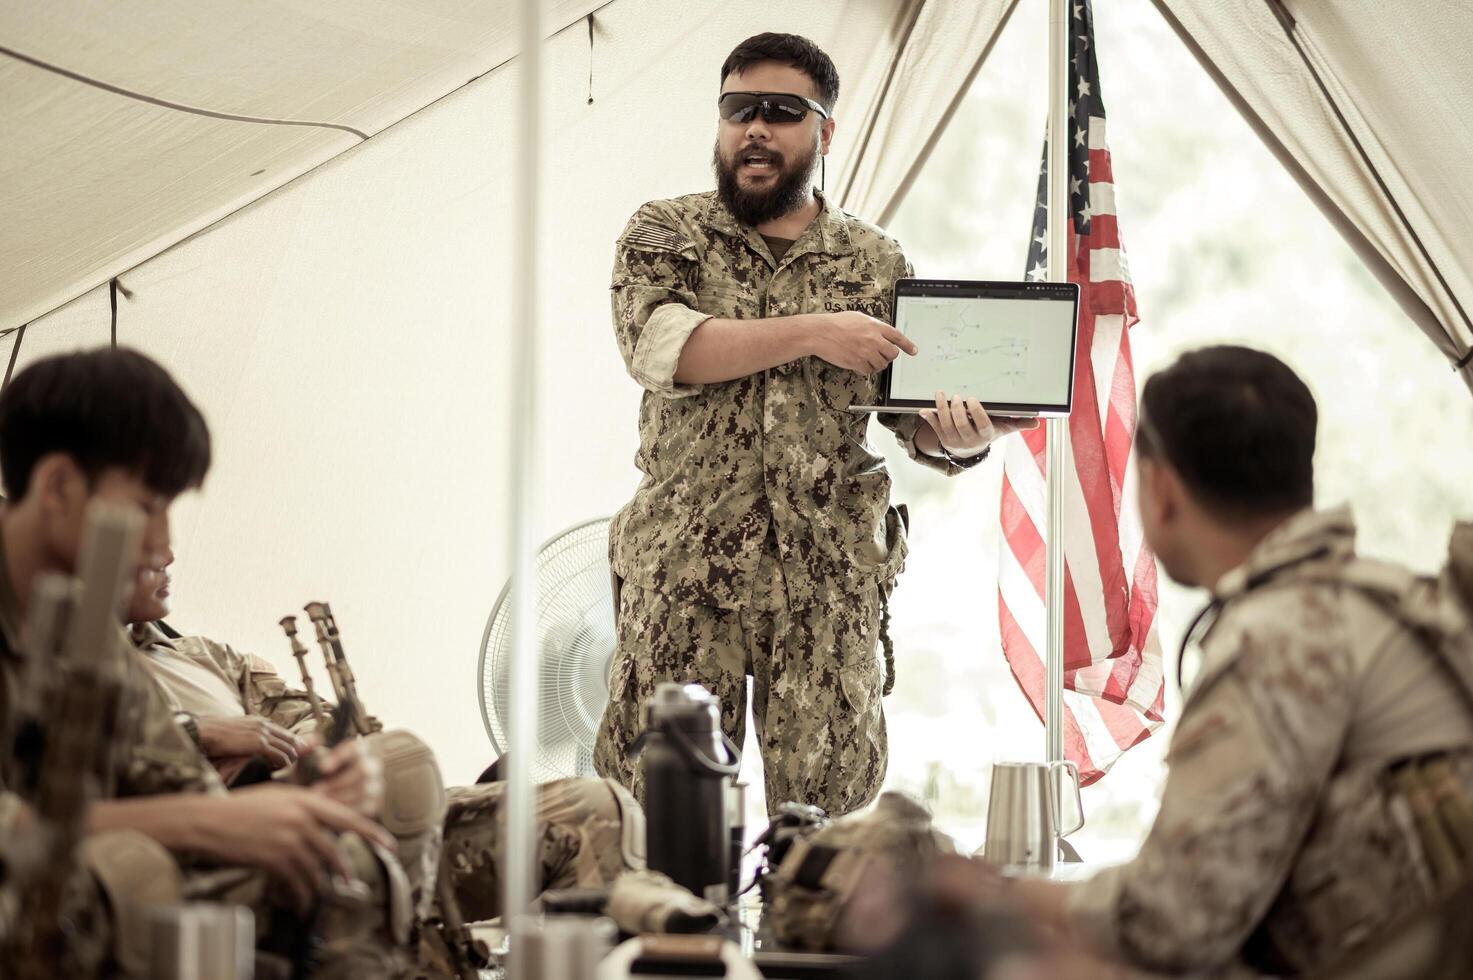 soldater i kamouflage uniformer planera på drift i de läger, soldater Träning i en militär drift foto